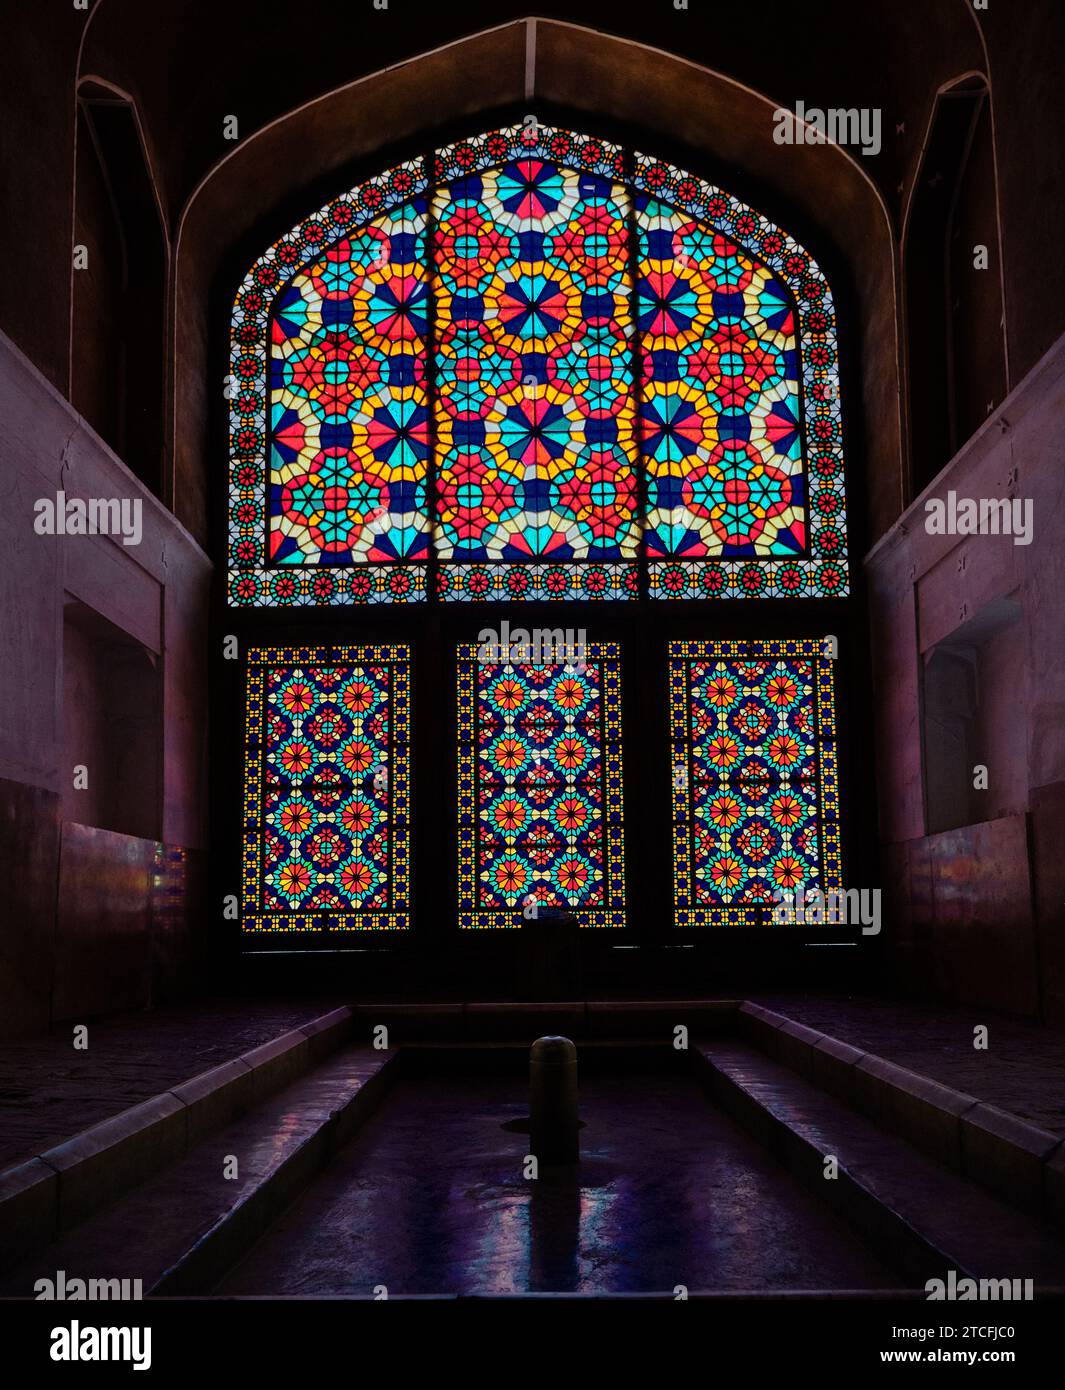 Splendida finestra, colorata finestra tradizionale iraniana presso la torre del vento di Dowlat Abad o dowlatabat, iran. Cultura persiana. Foto Stock